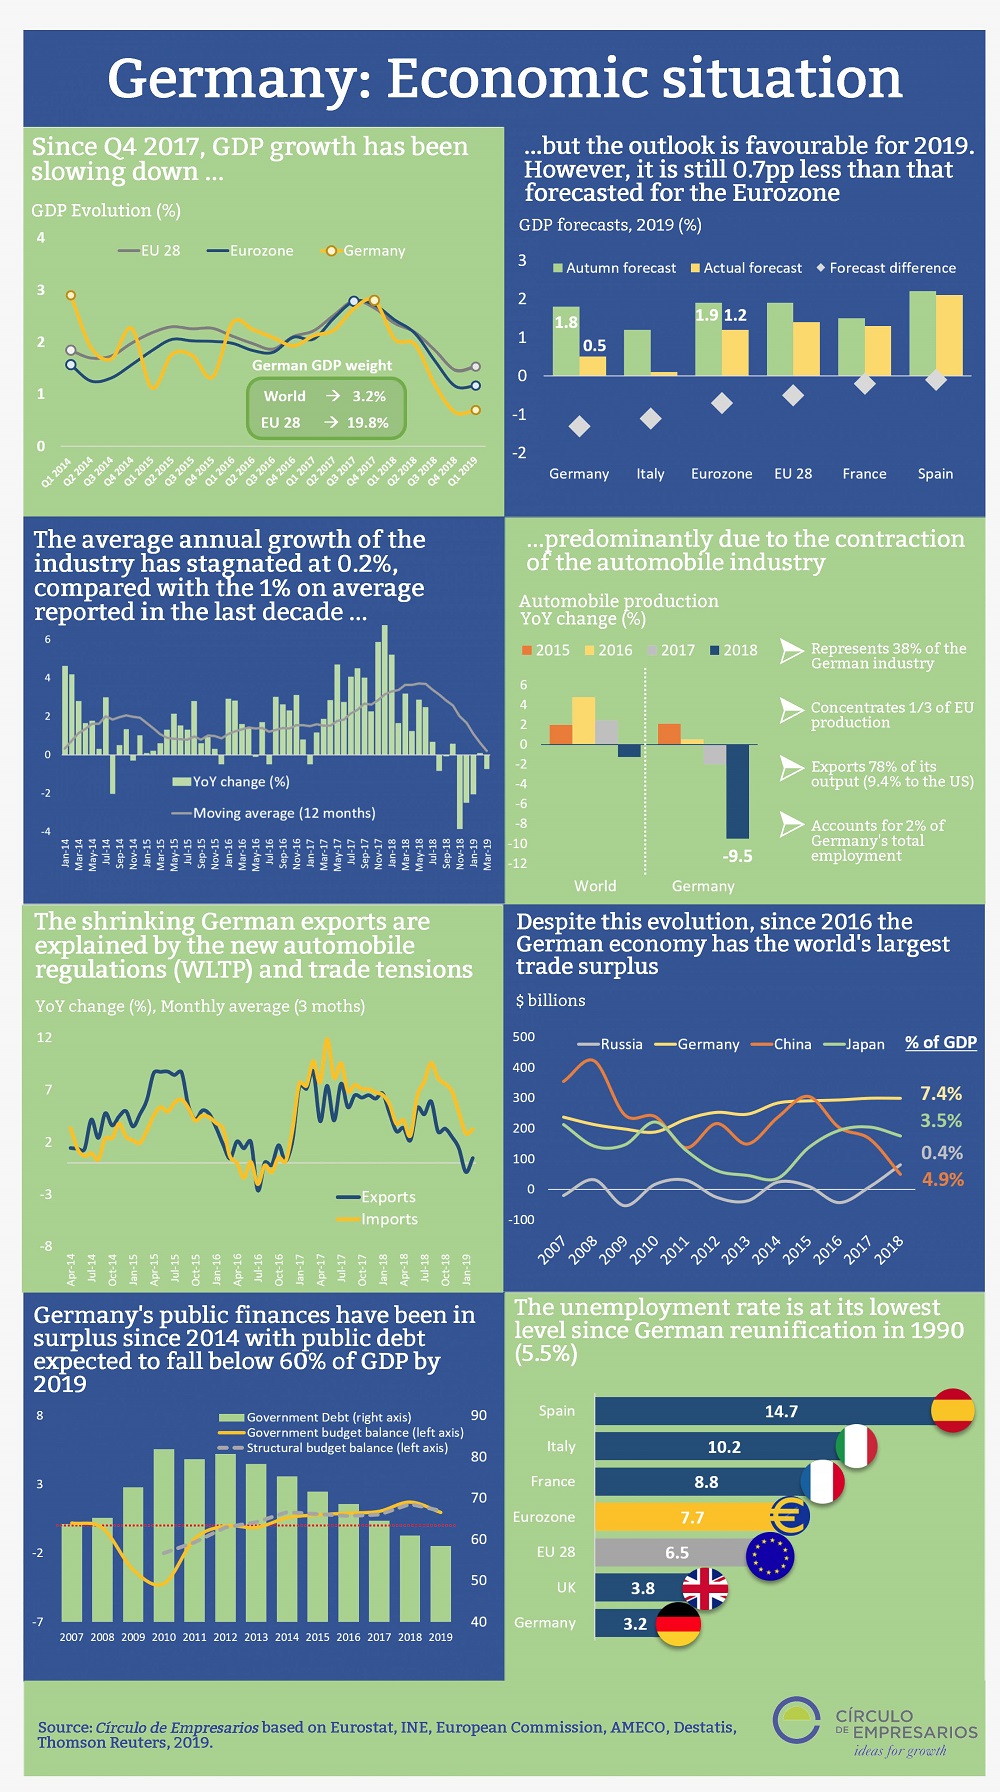 Germany economic situation infographic Circulo de Empresarios May 2019